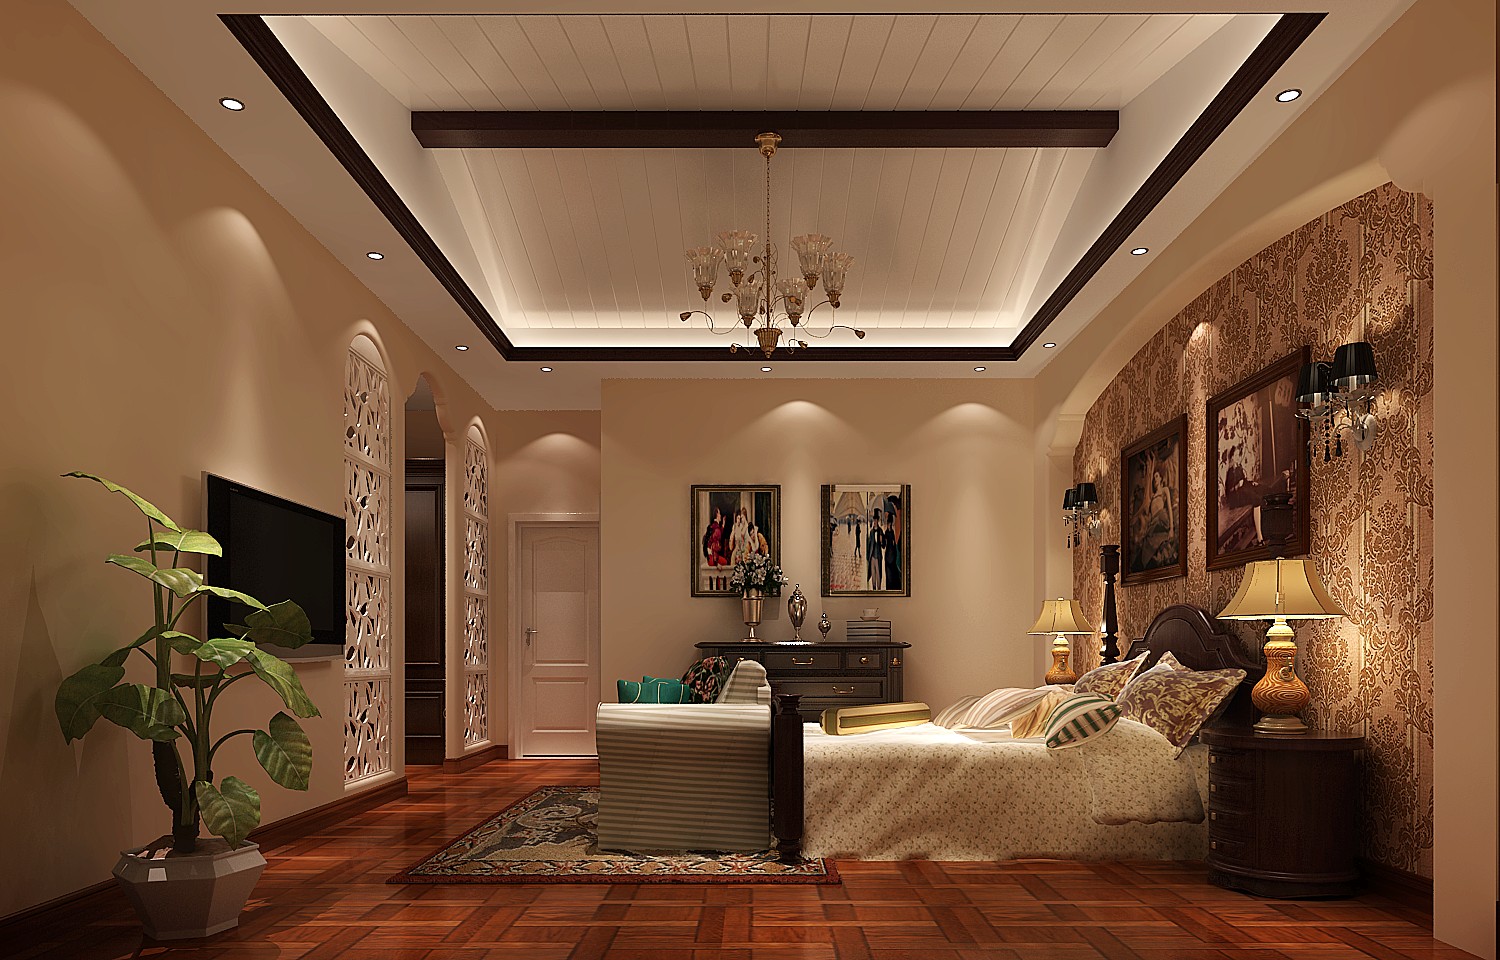 托斯卡纳 美观 温馨 舒适 恋家 卧室图片来自北京高度装饰设计王鹏程在阿凯迪亚托斯卡纳风格的分享